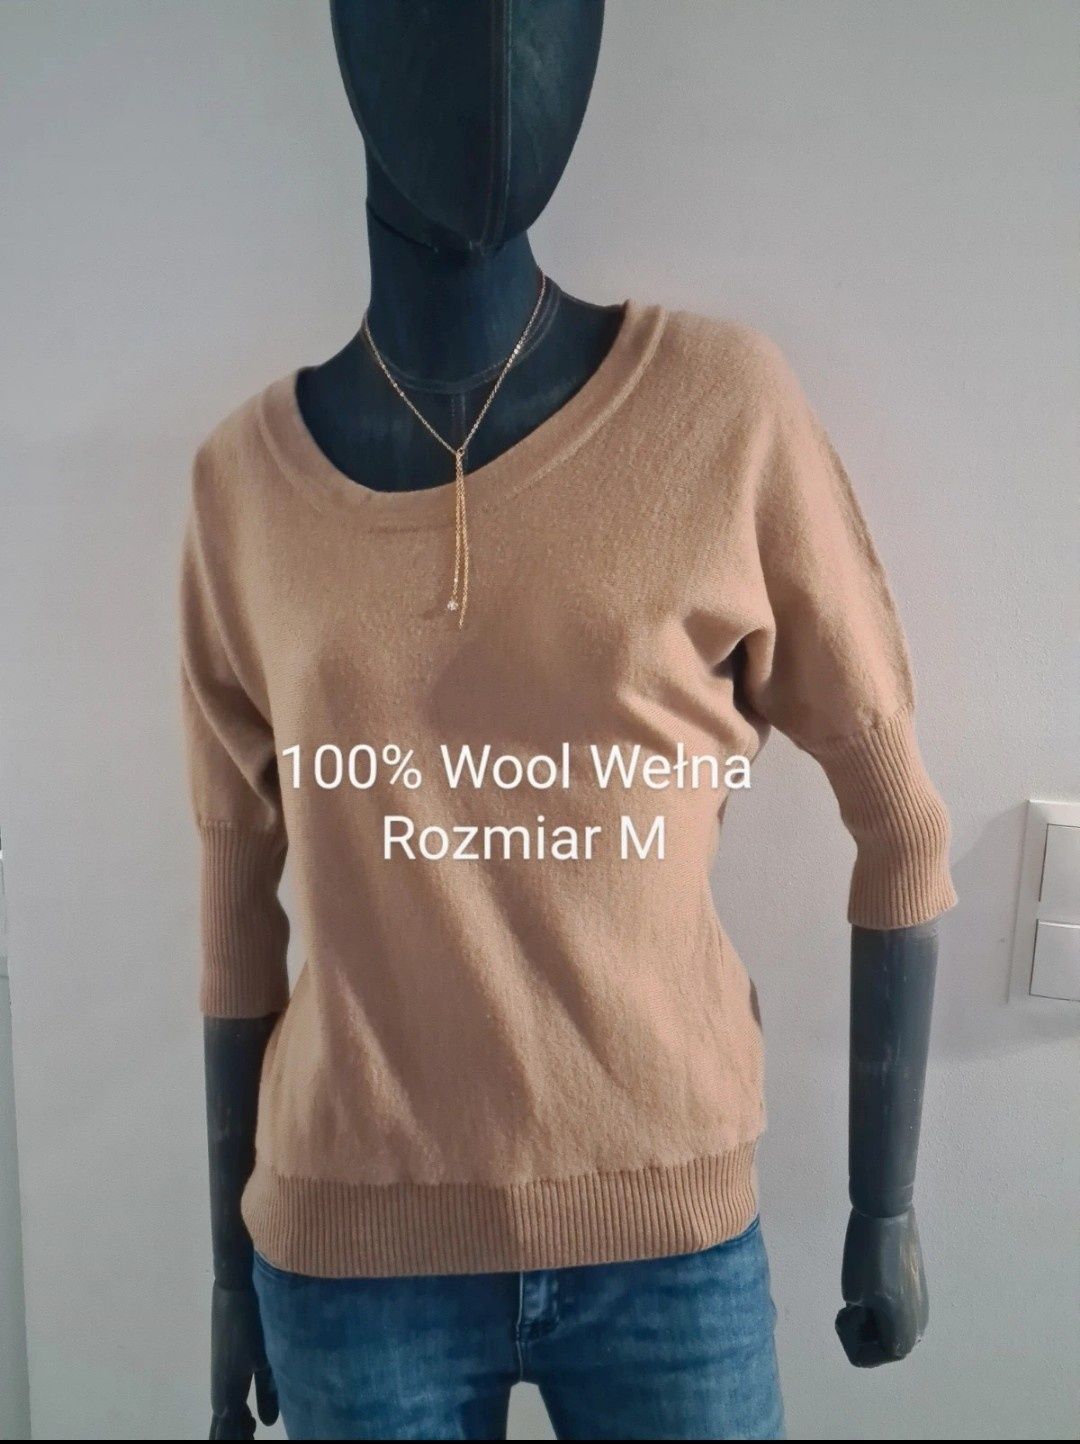 Bluzka Sweter 3/4 rękaw 100% Wełna. Rozmiar M 38. Kolor cammel. Jaeger